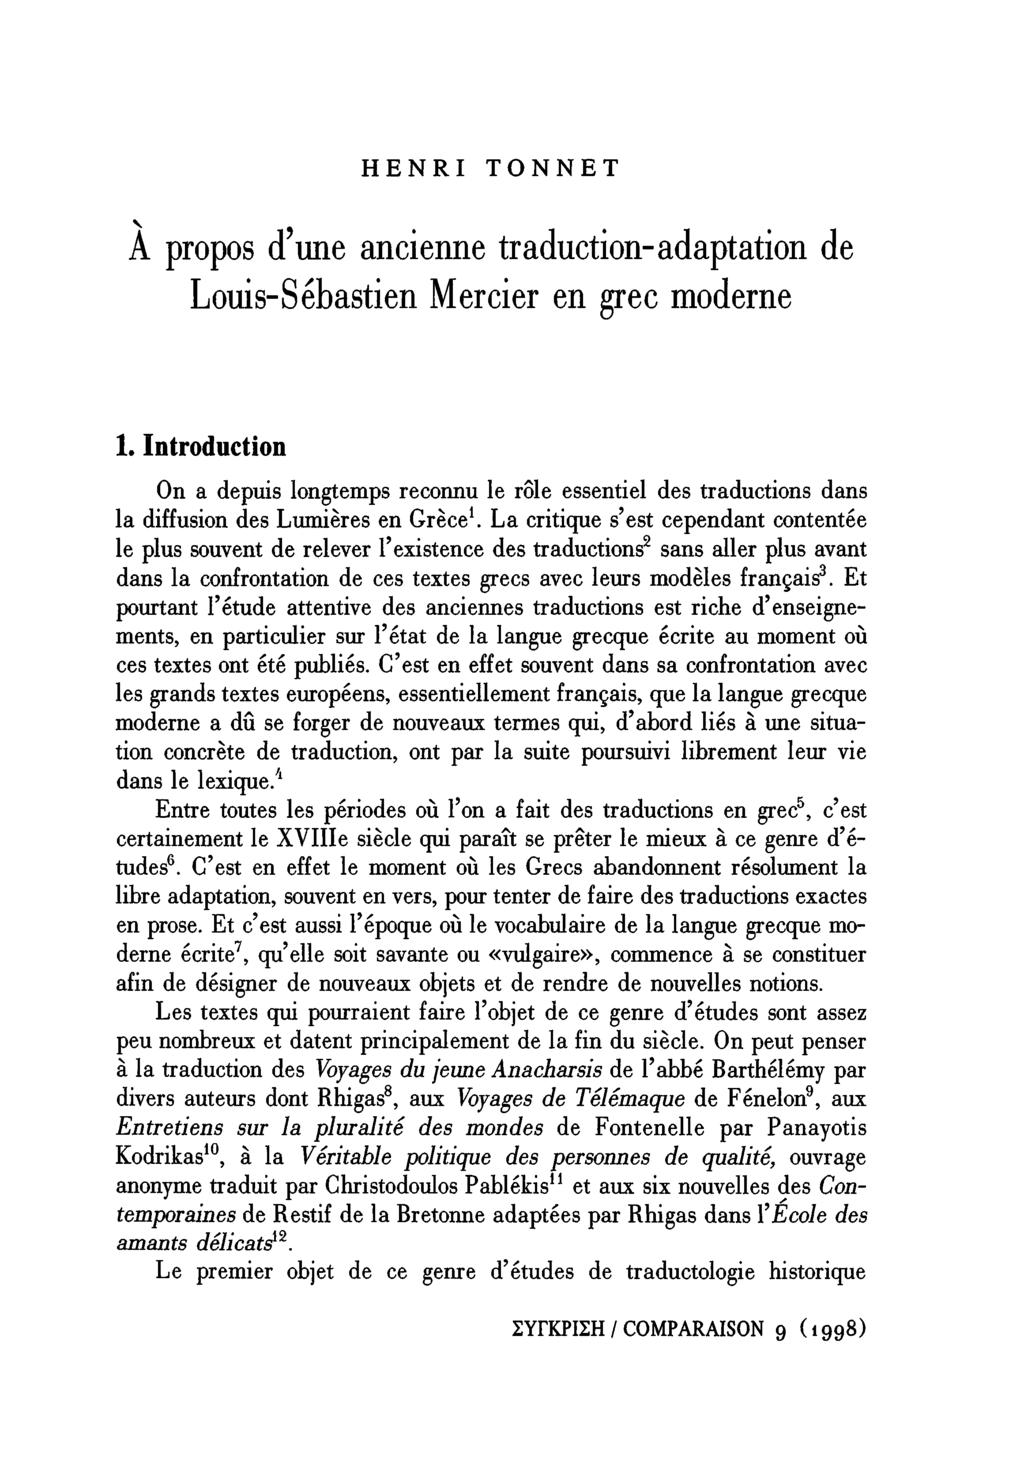 HENRI TONNET A propos d'une ancienne traduction-adaptation de Louis-Sébastien Mercier en grec moderne 1.